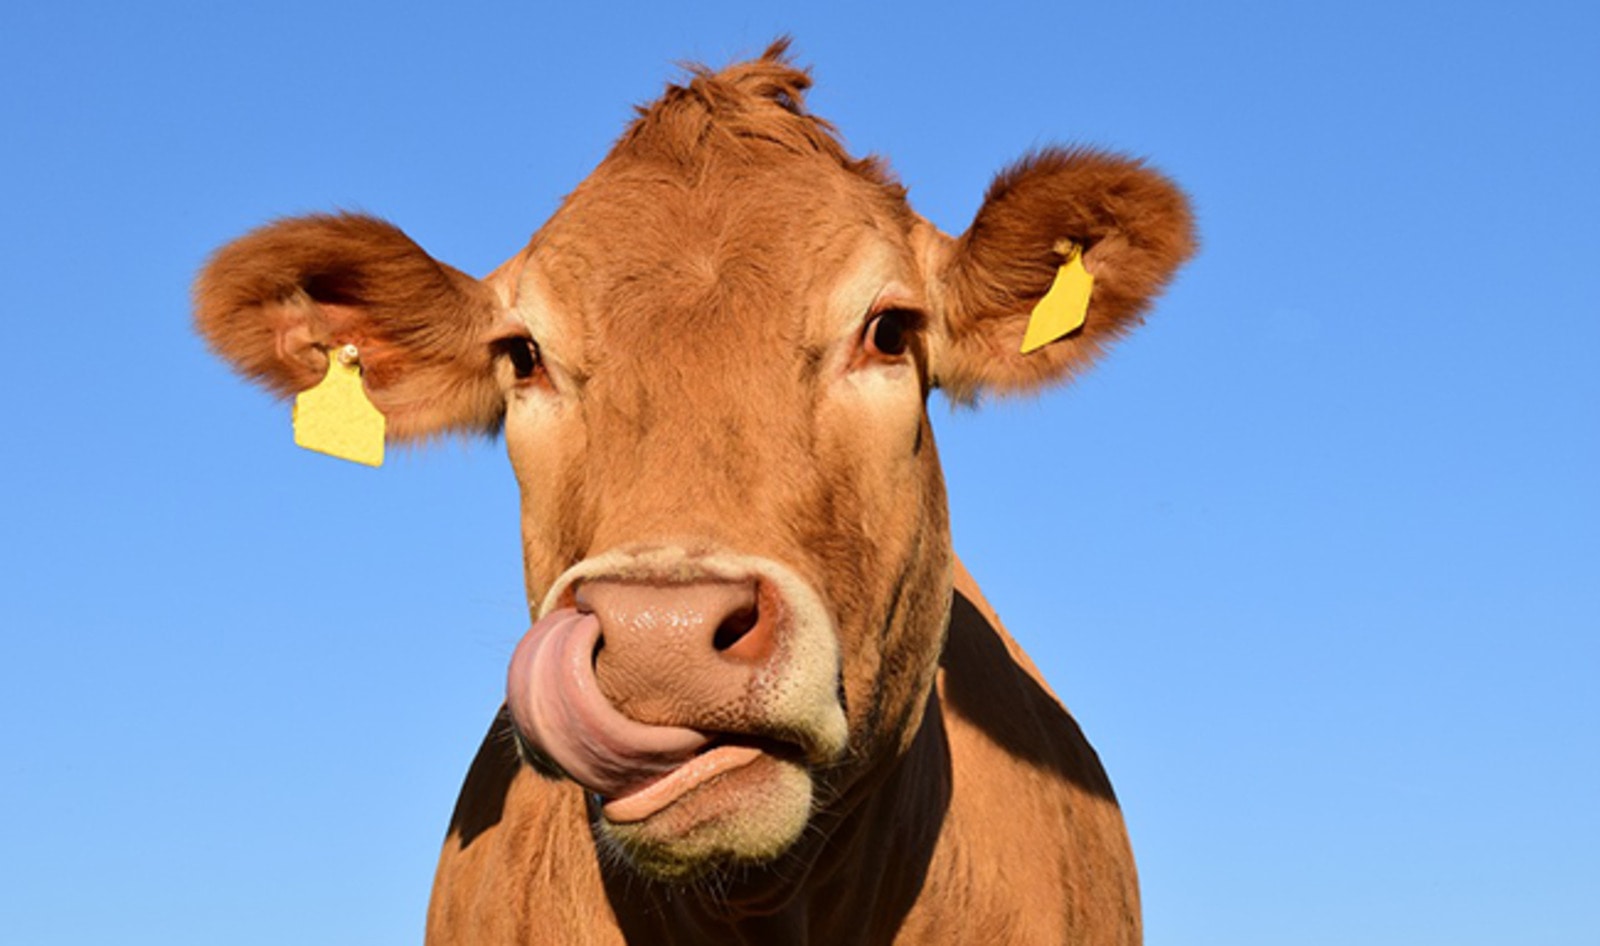 UN Calls for a “Massive” Decrease in Animal Agriculture